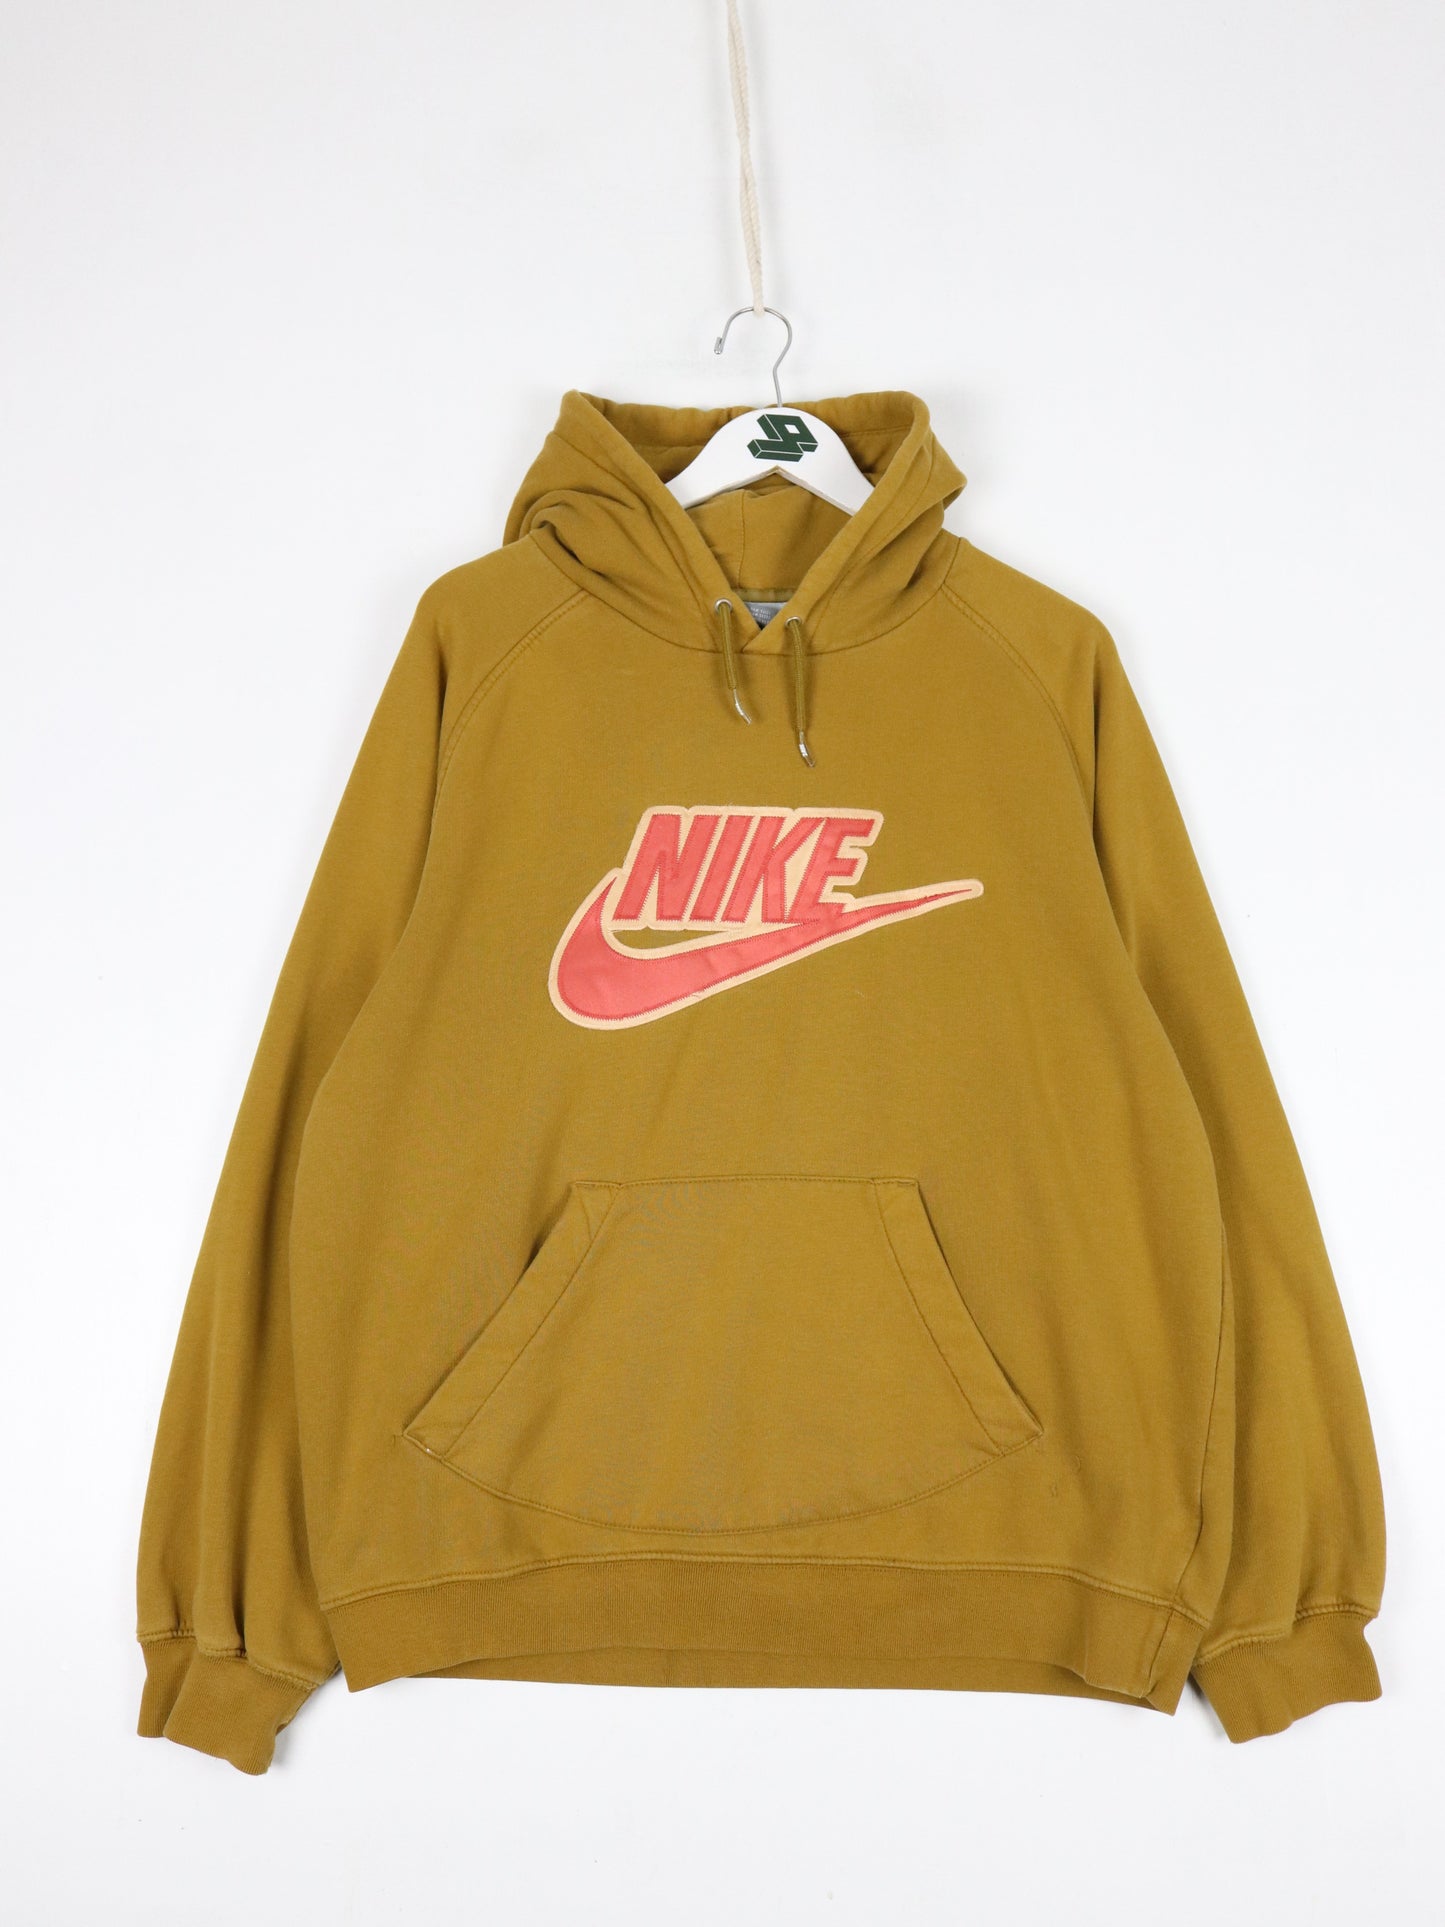 Vintage Nike Sweatshirt Mens Large Yellow Swoosh Hoodie